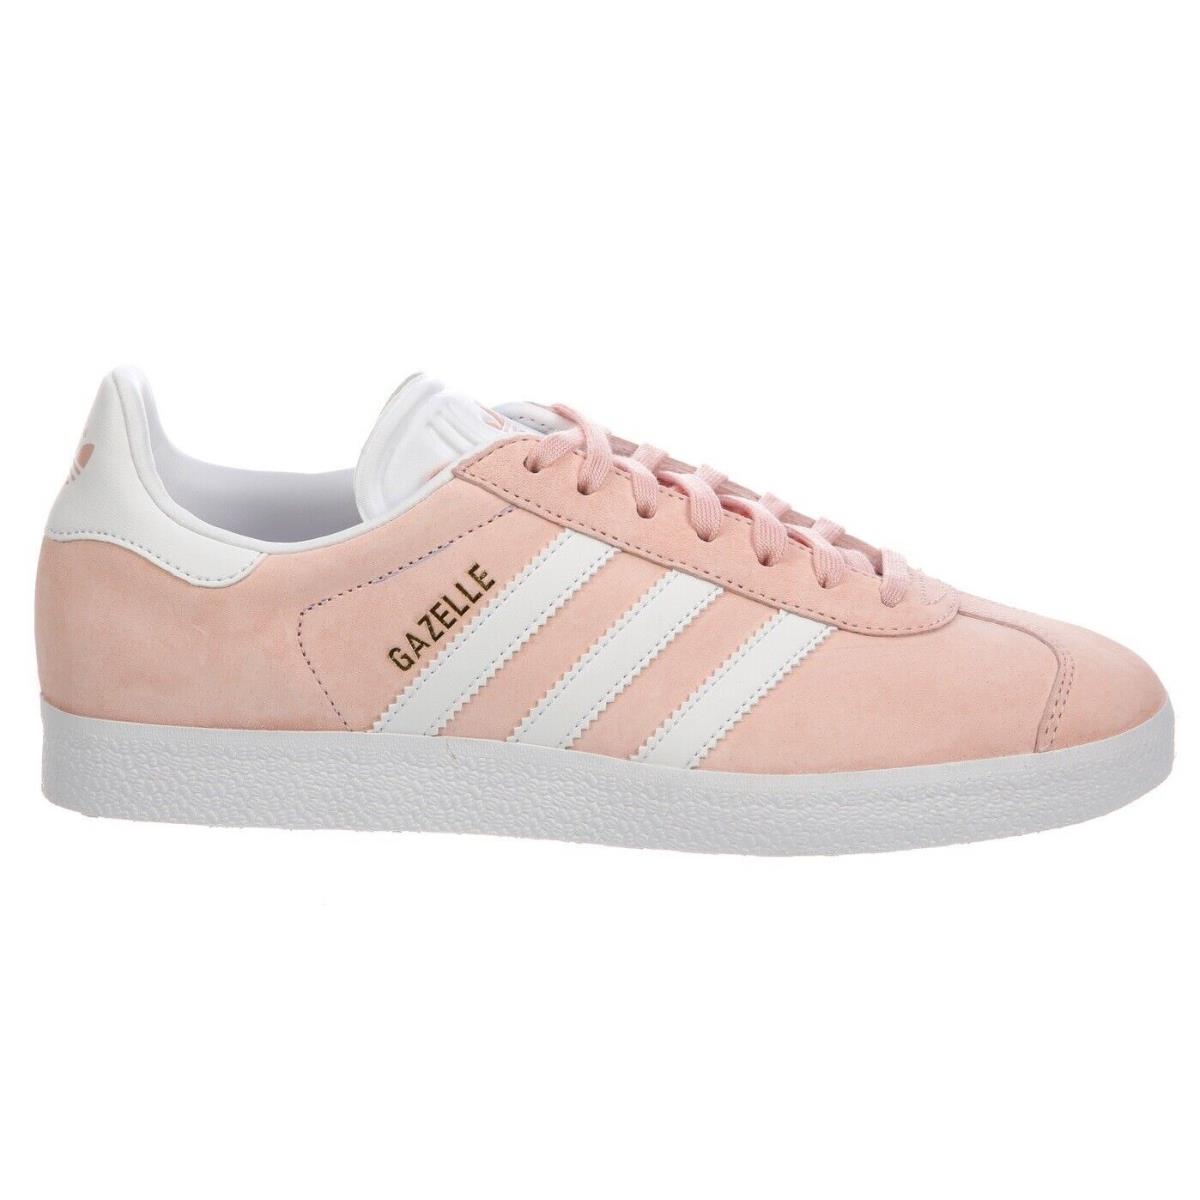 Adidas Gazelle Womens Size 5 - BA9600 Vapor Pink White Shoes - Pink, way: VAPOR PINK/ WHITE/ GOLD METALLIC